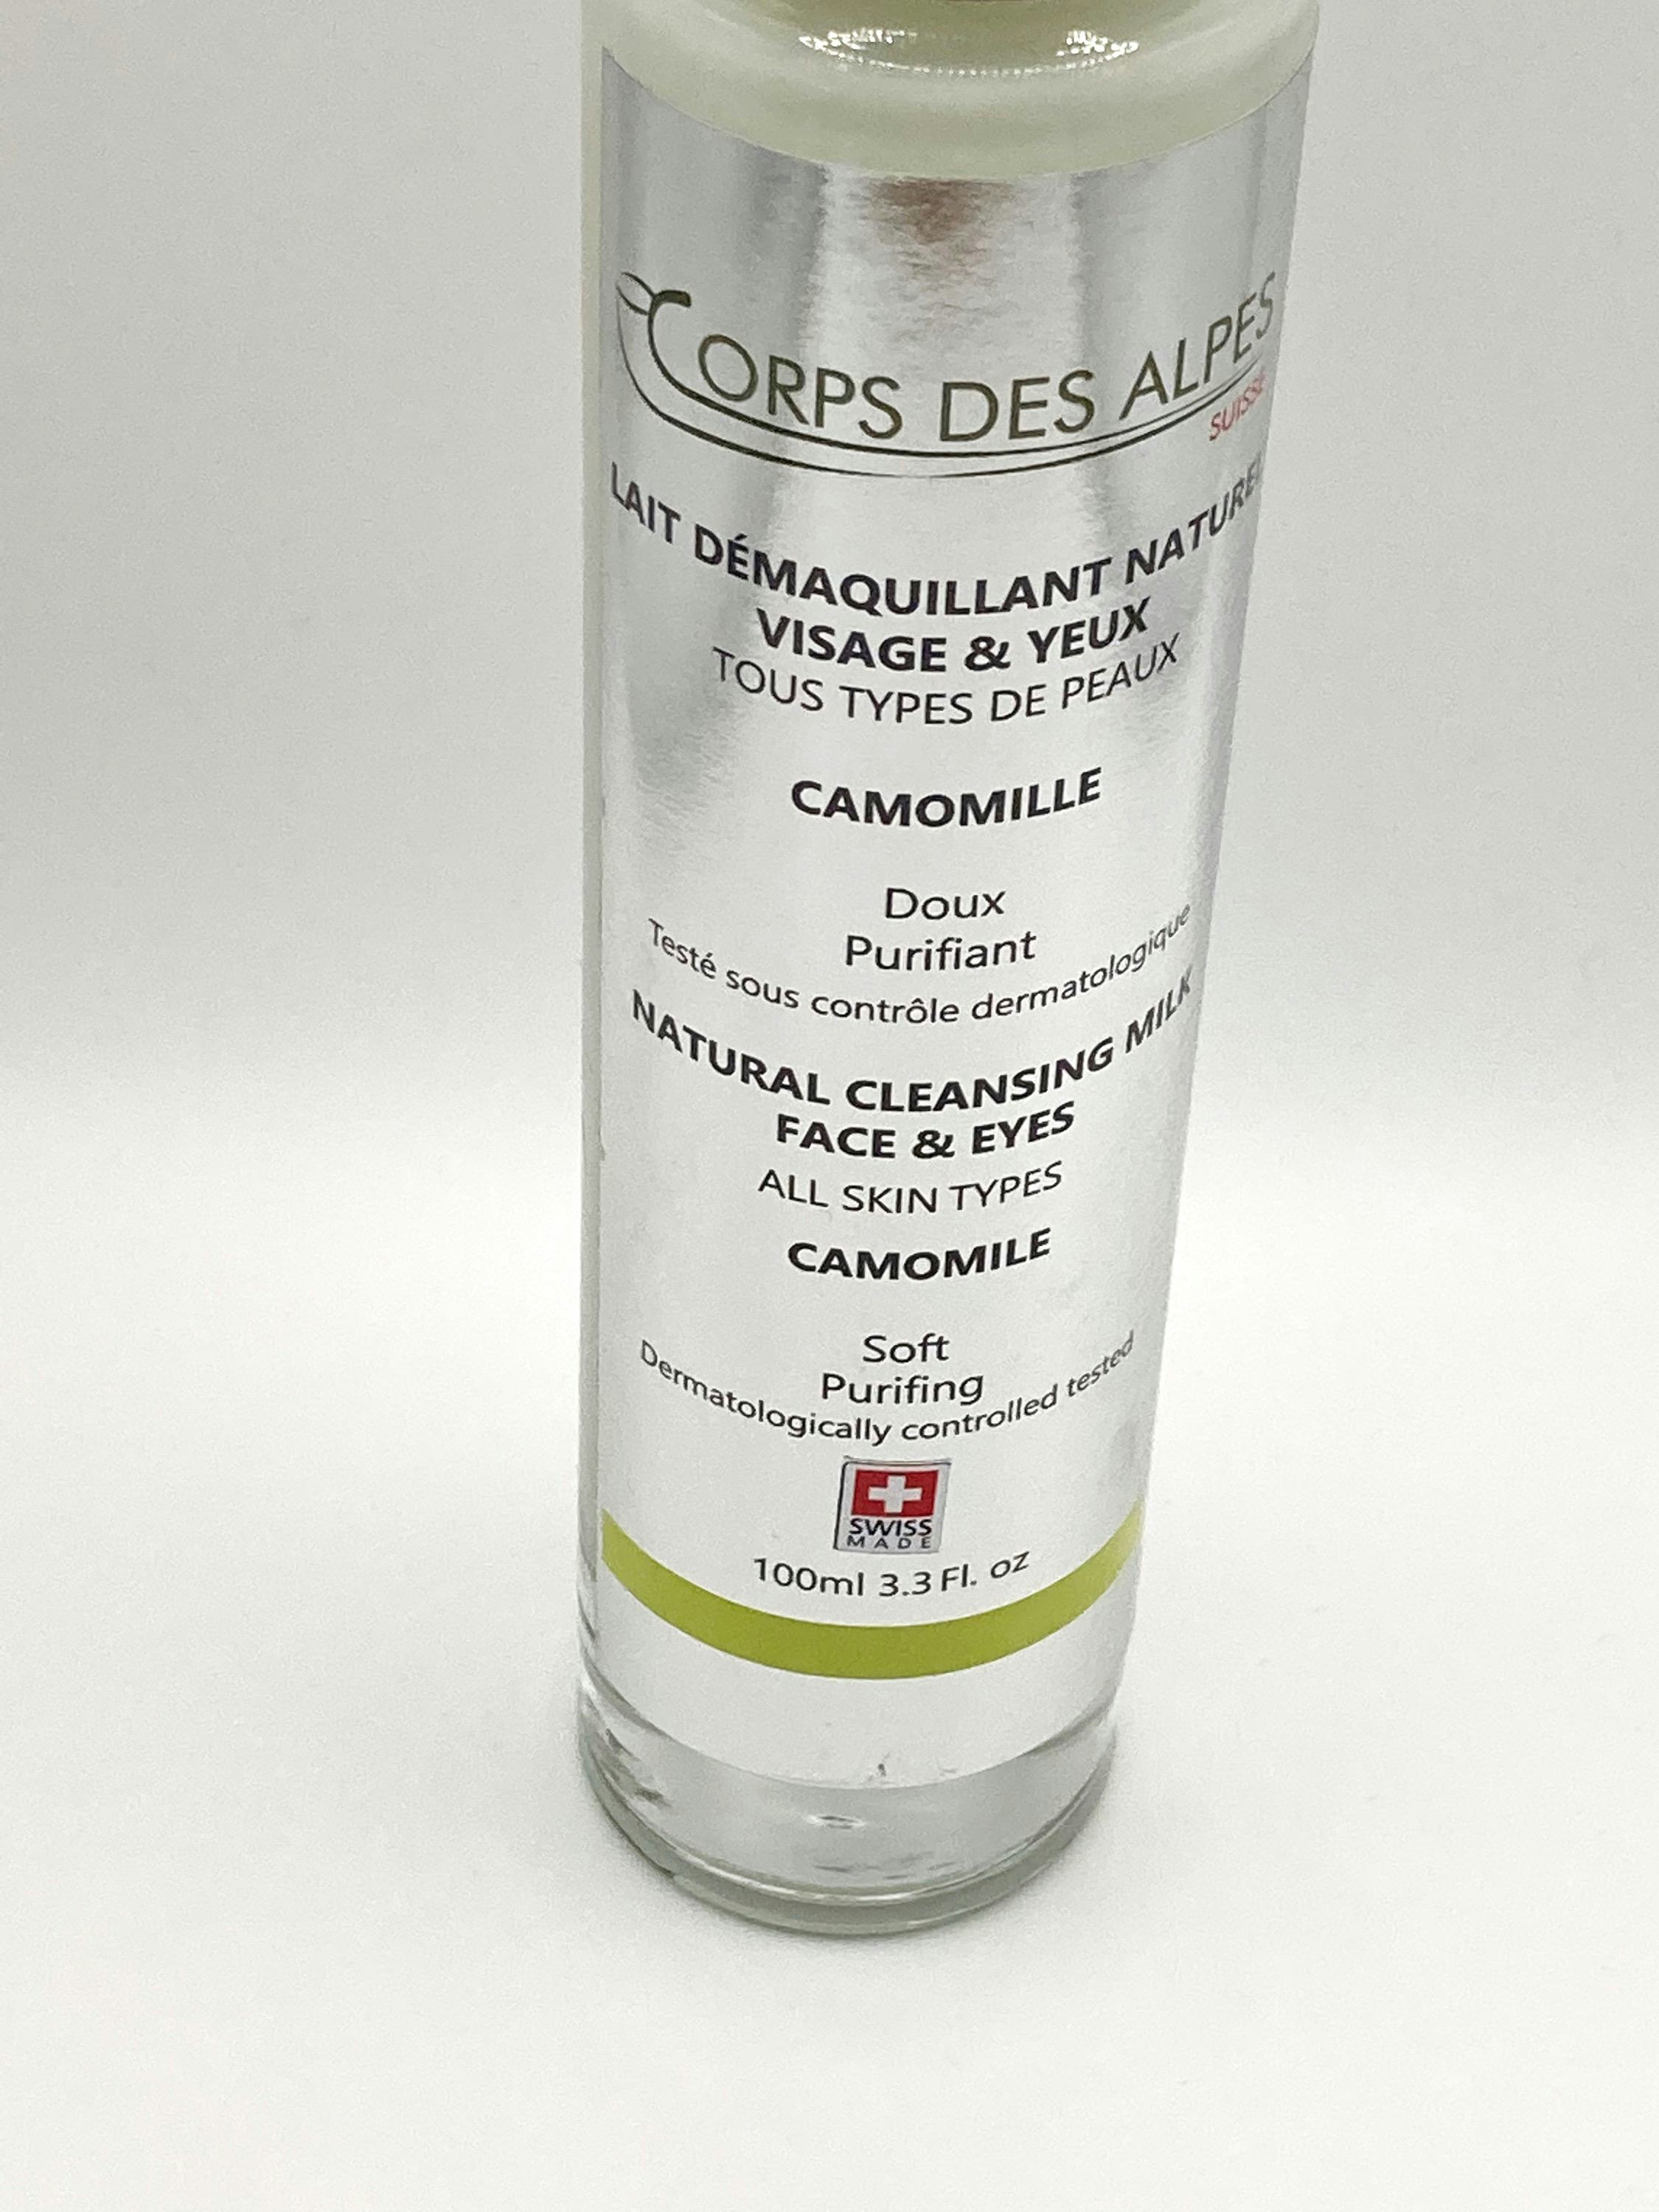 Latte Detergente Naturale alla Camomilla, prodotto artigianale per la vendita diretta in Svizzera